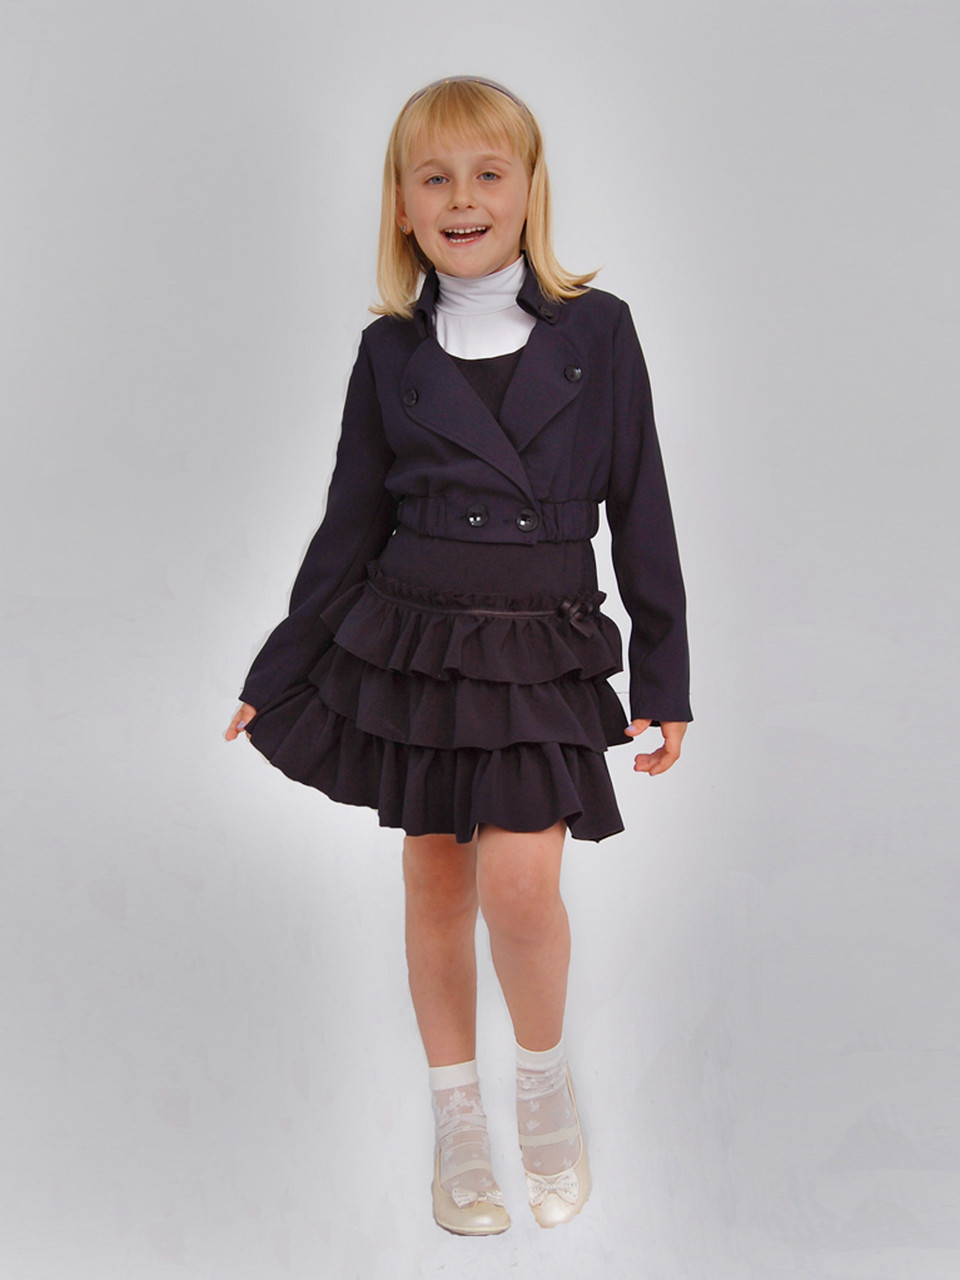 Піджак шкільний для дівчинки м-956 зріст 122 синій тм "Попілюшка"